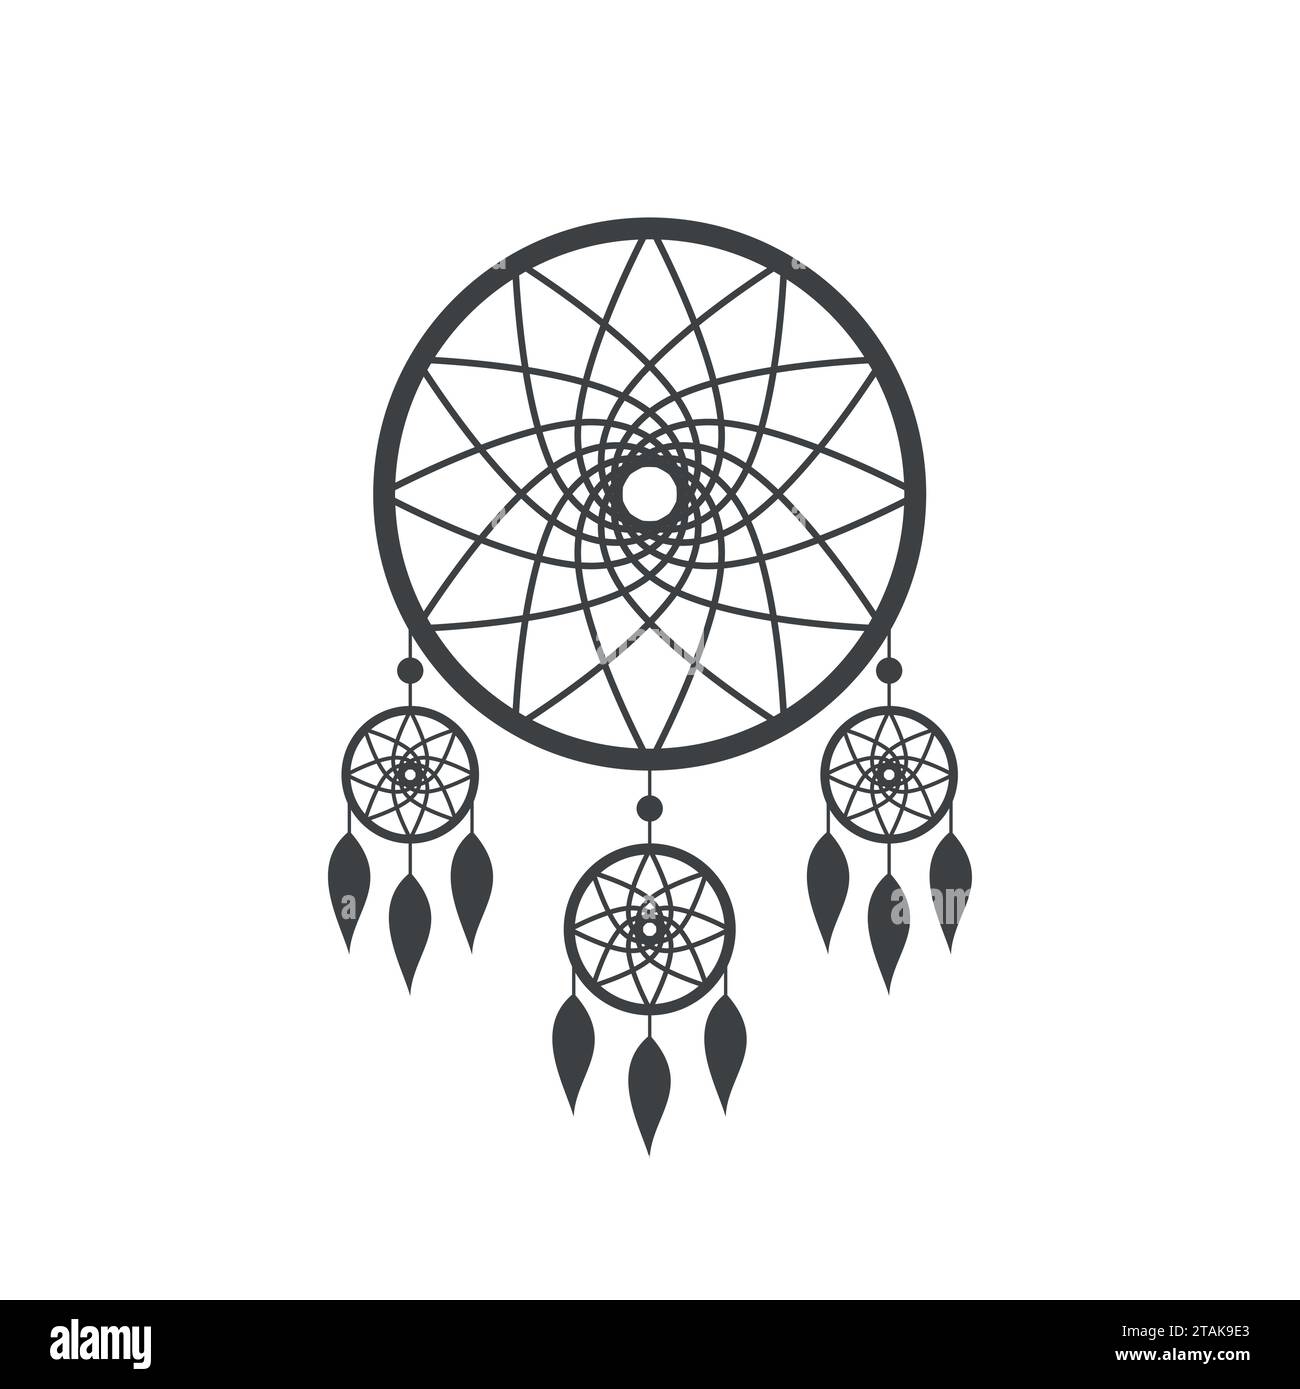 Icona Dreamcatcher isolata su sfondo bianco. Icona di cattura dei sogni degli indiani nativi americani. Illustrazione vettoriale Illustrazione Vettoriale